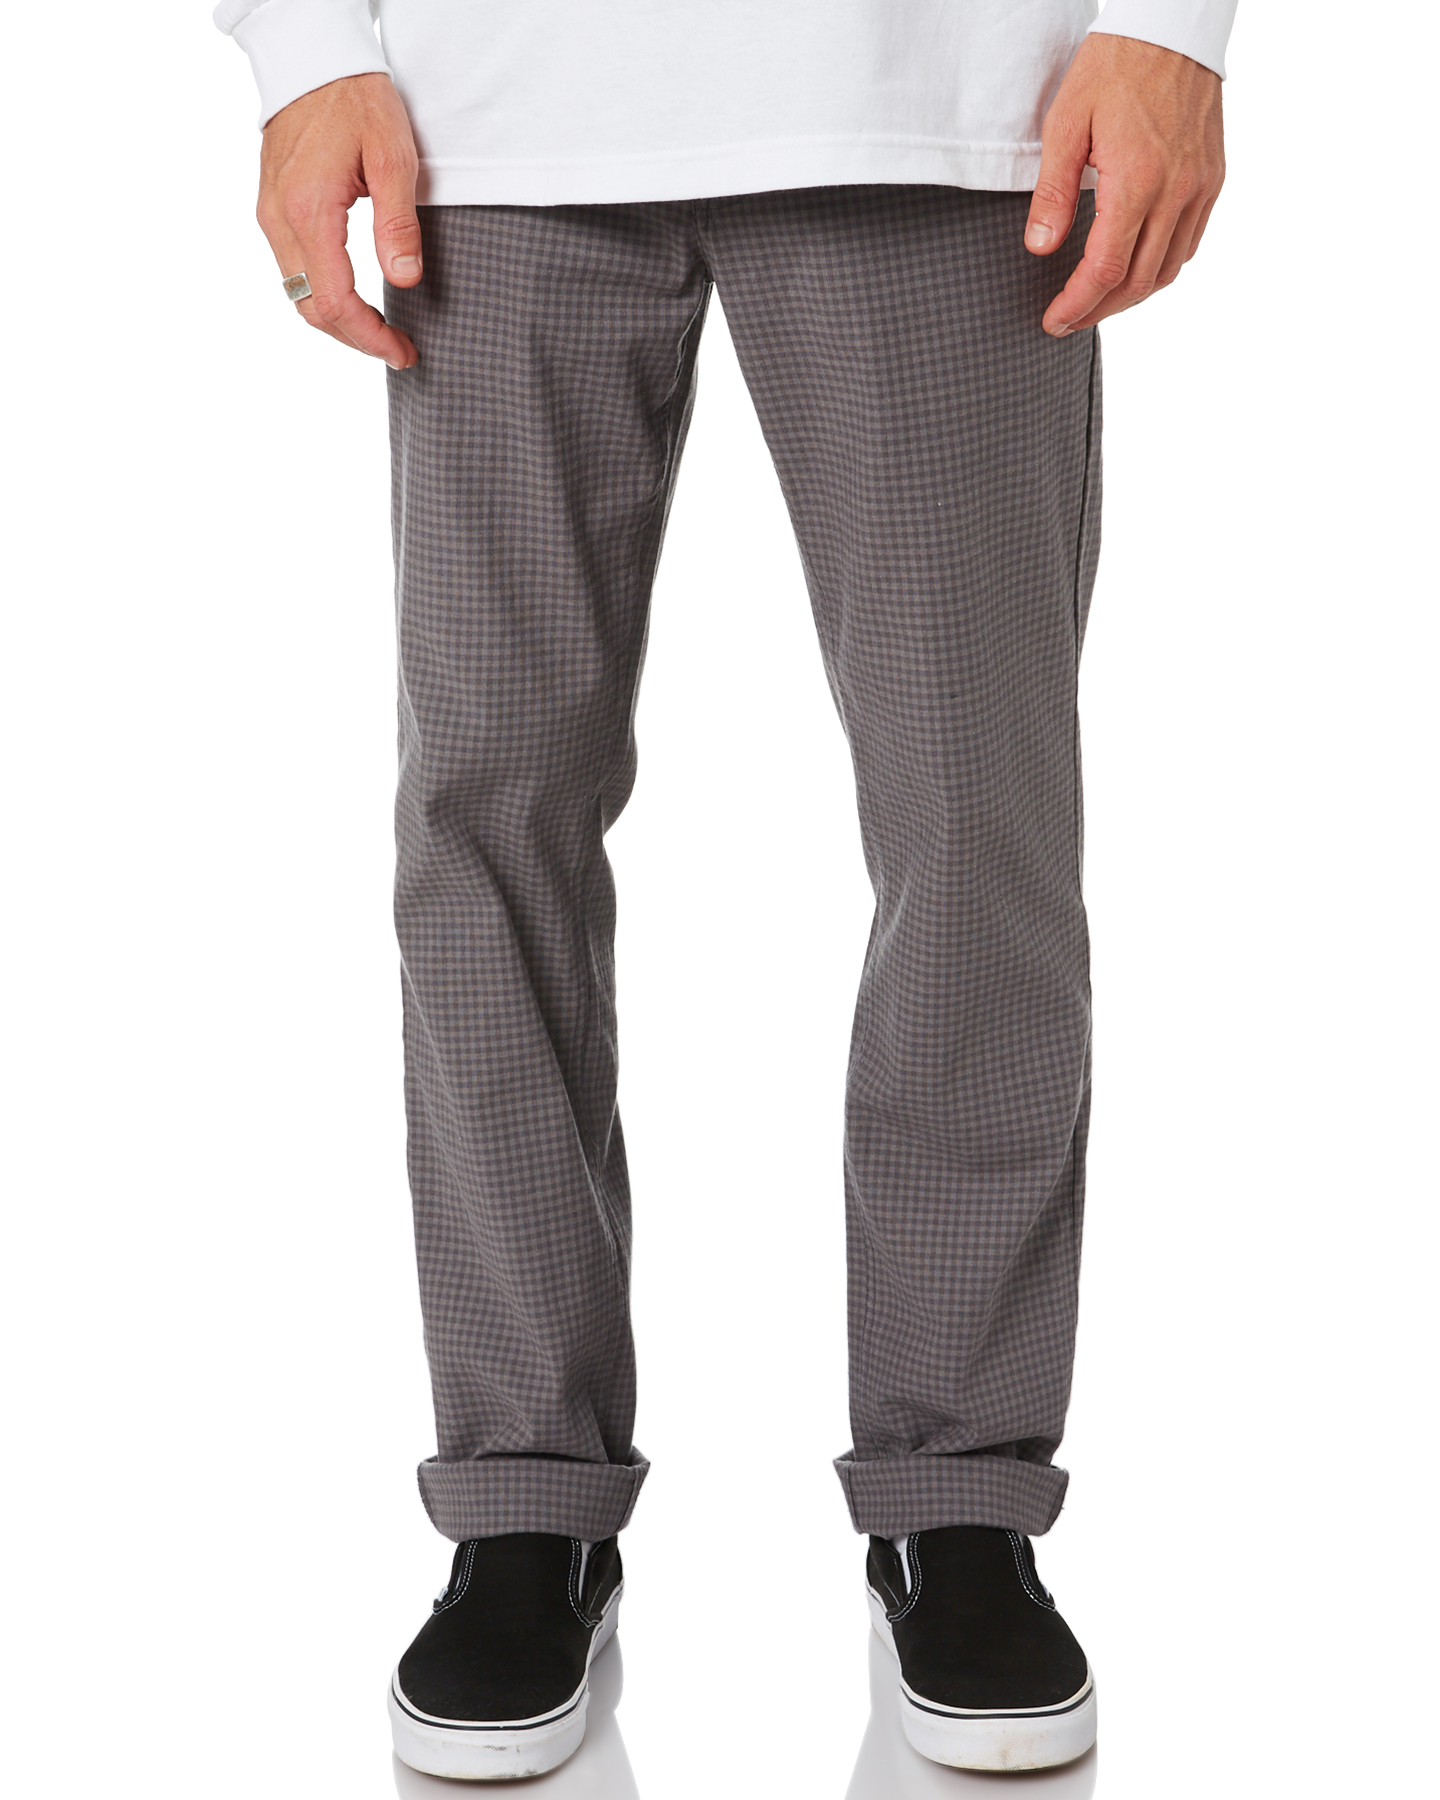 chino gray pants